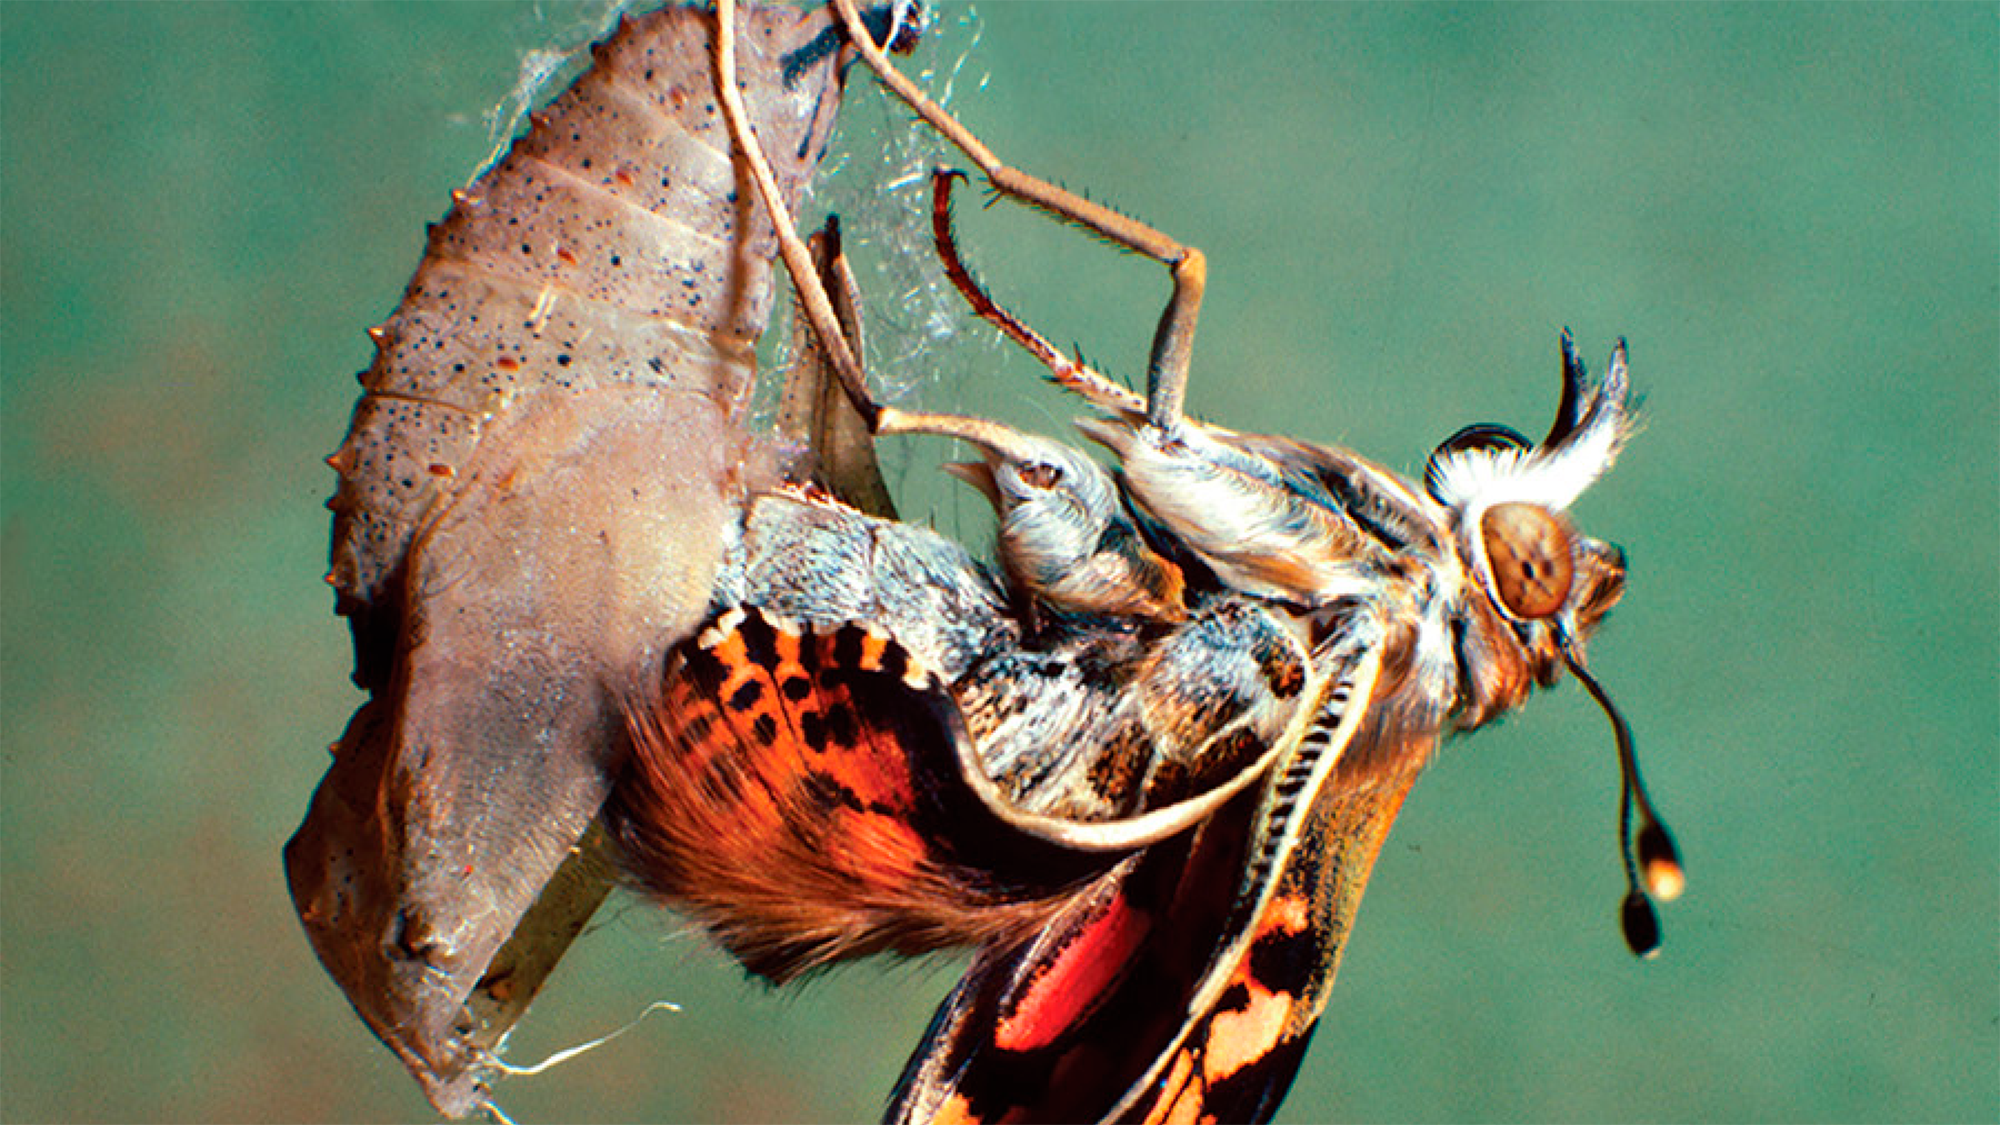 La metamorfosi és considerada un dels processos més innovadors a l'evolució dels insectes. | Imatge extreta de la portada del llibre "Insect Metamorphosis: From Natural History to Regulation of Development and Evolution".